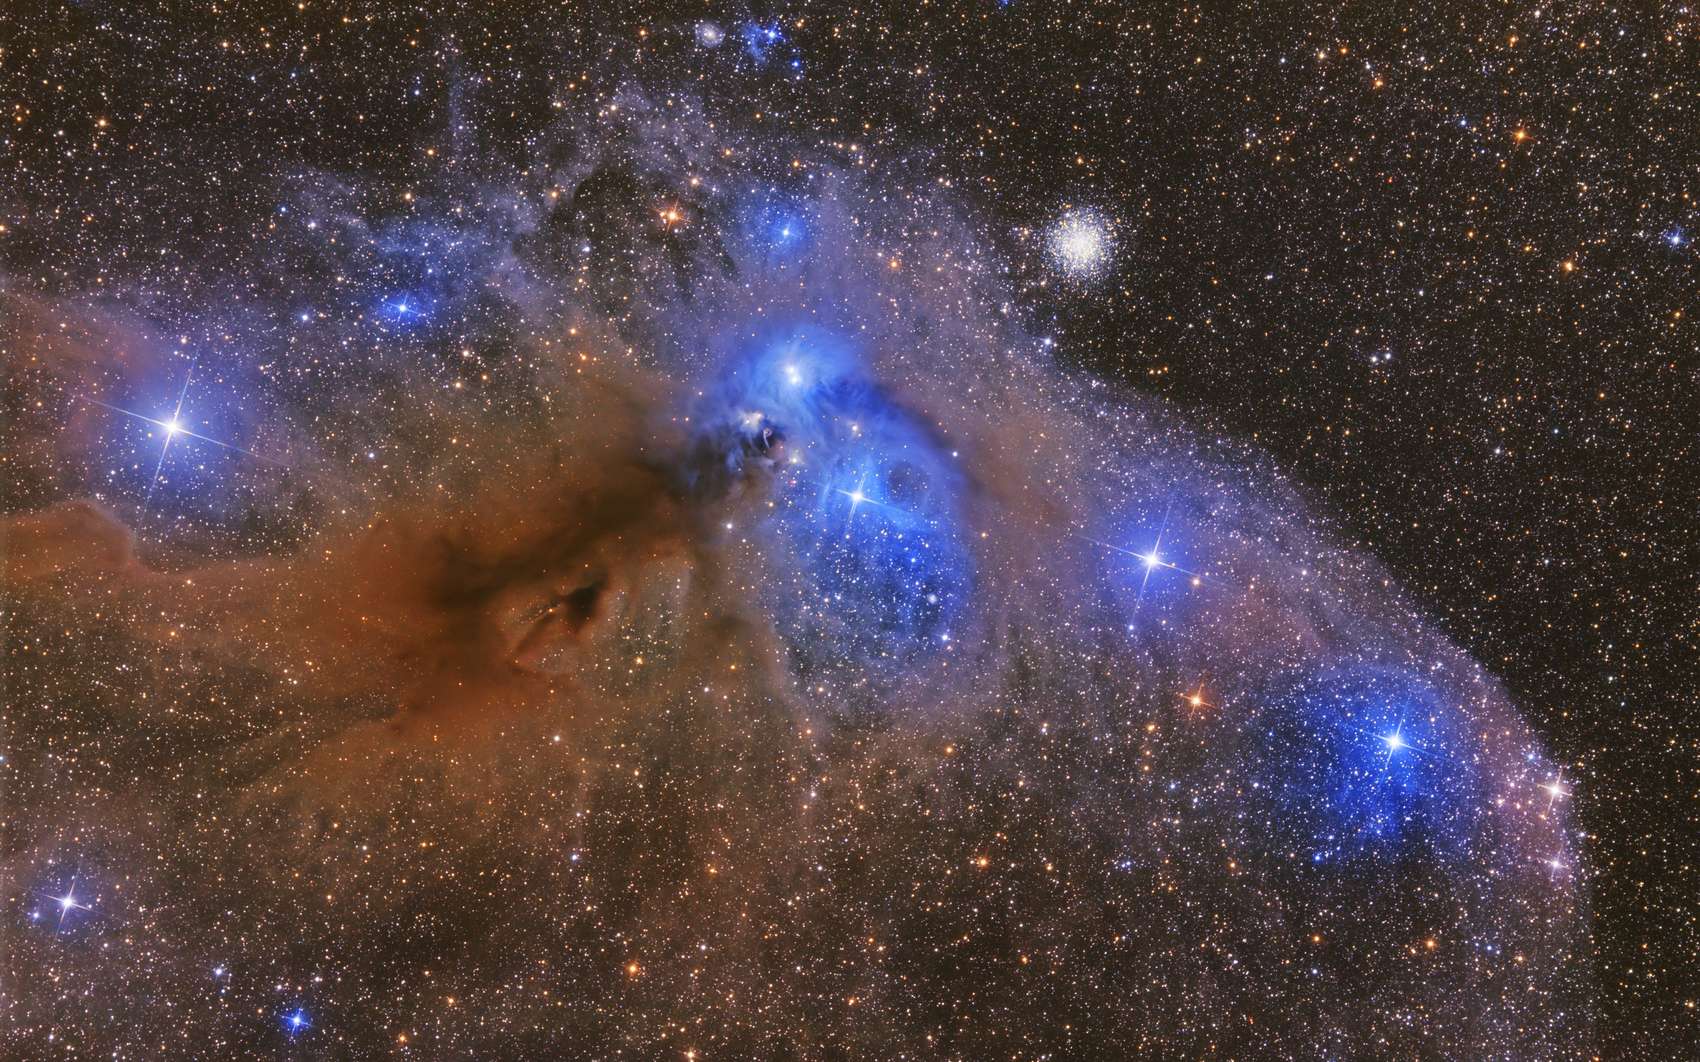 La clé de l'origine de la vie se trouve-t-elle dans les poussières interstellaires ? Ici, NGC 6726, une nébuleuse par réflexion qui se situe à environ 500 années-lumière dans la constellation de la Couronne australe. Elle fait partie d'un ensemble complexe d'objets célestes. NGC 6726 est un grand nuage de gaz constitué d'une fine poussière qui renvoie la lumière des étoiles proches. © Artem, Fotolia